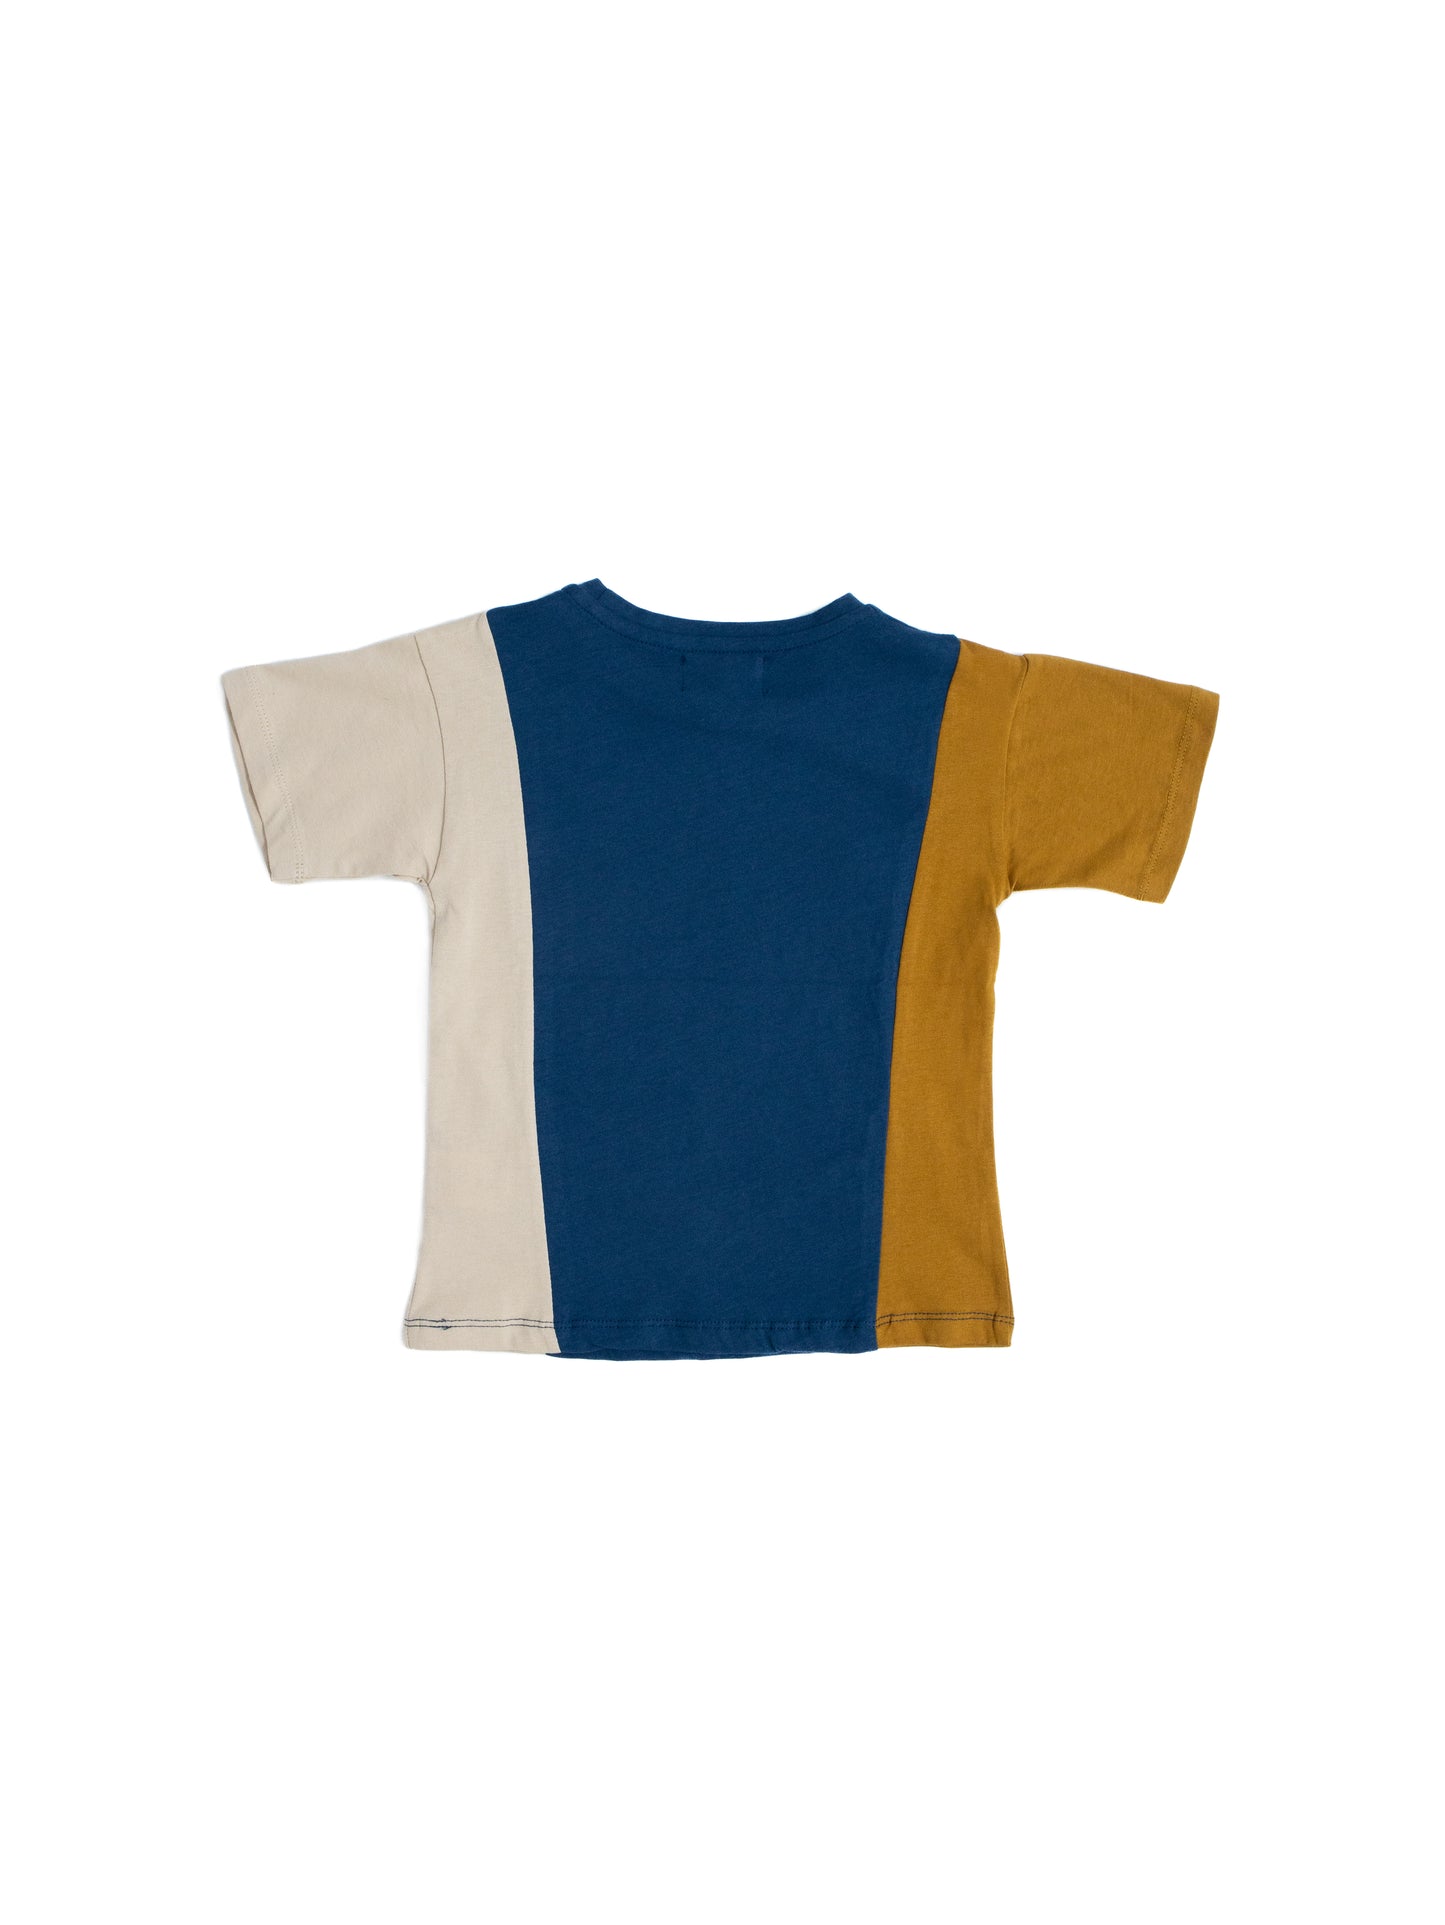 Детская трехцветная футболка унисекс из 100% хлопка с принтом